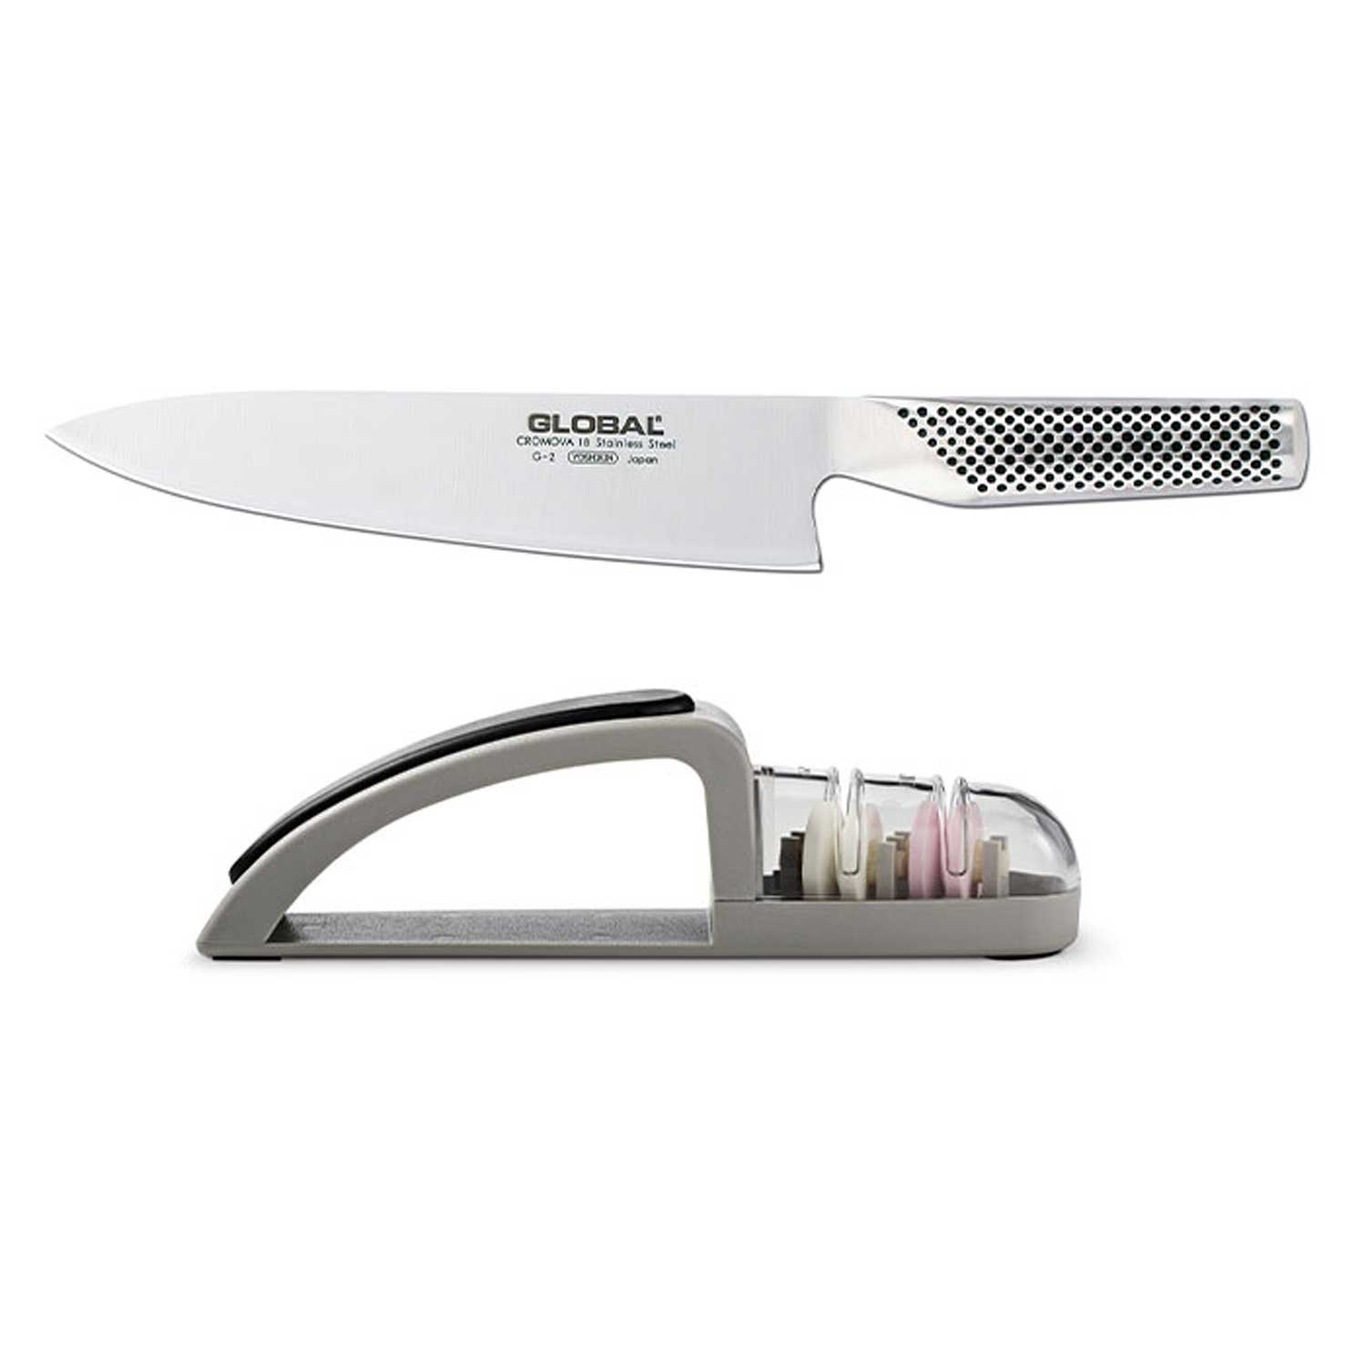 Global Chef Knife + Whetstone Knife Sharpener